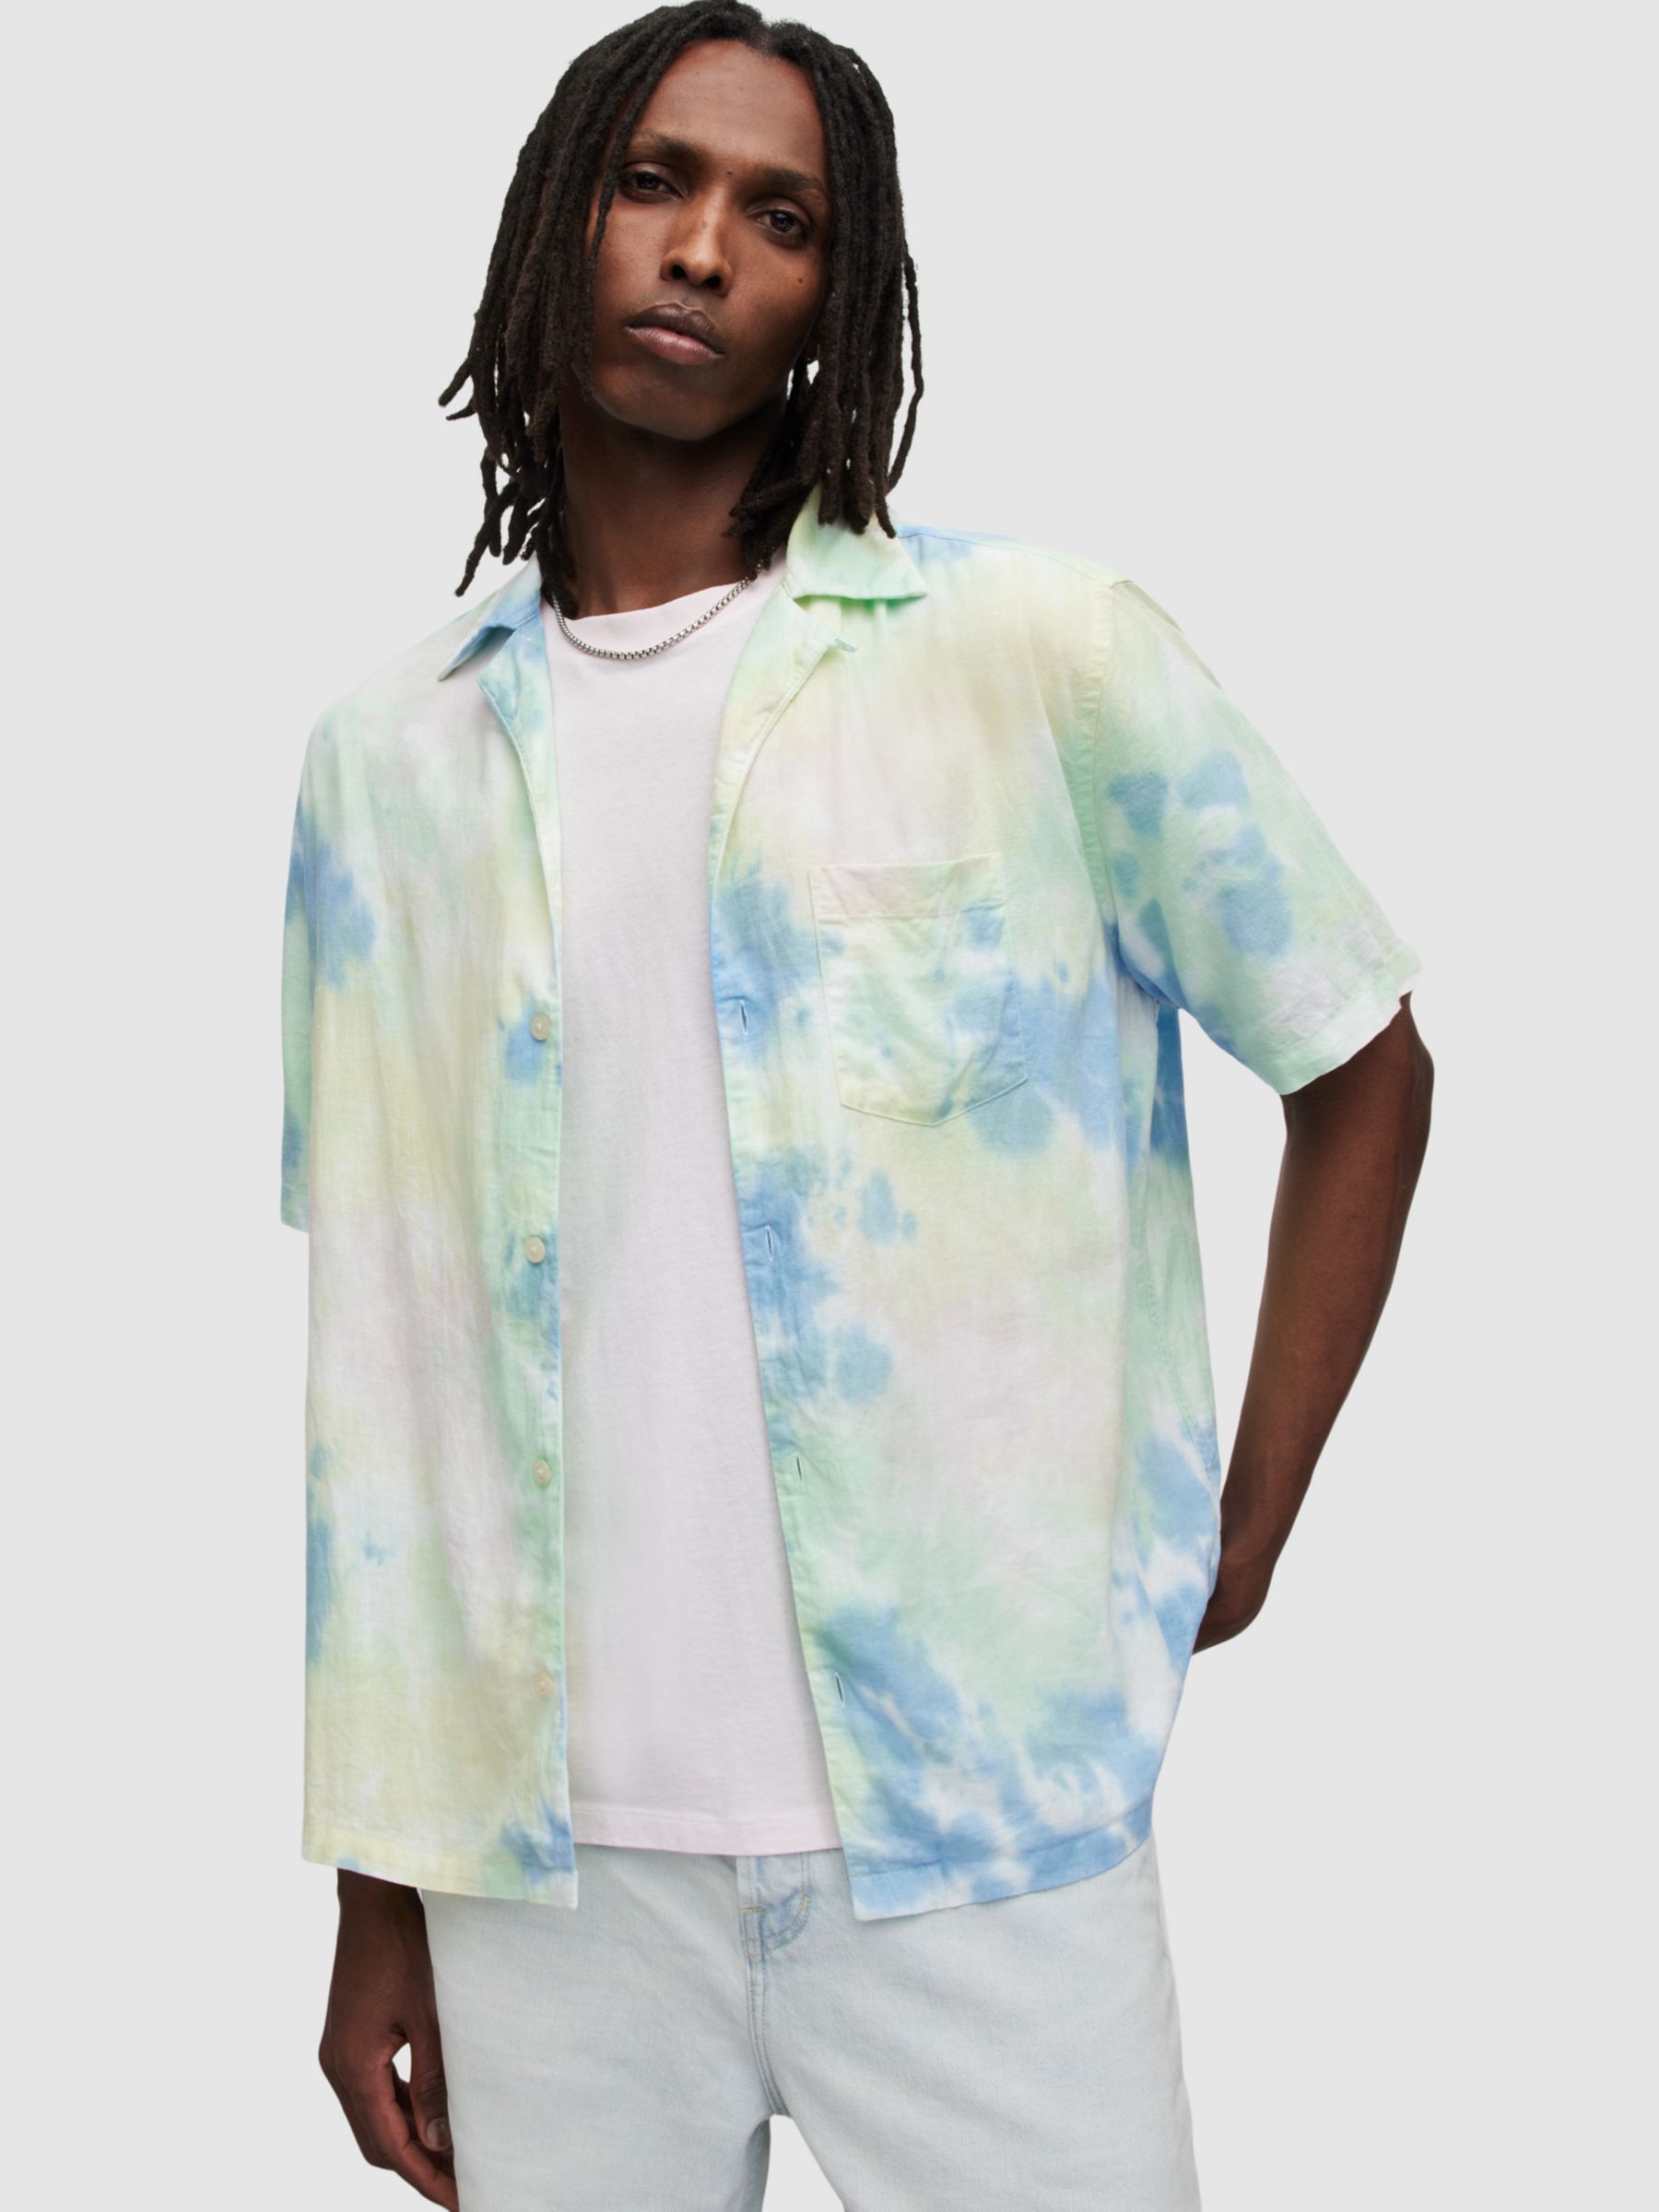 AllSaints Pada Abstract Print Linen Blend Short Sleeve Shirt, Chartreuse Green/Multi